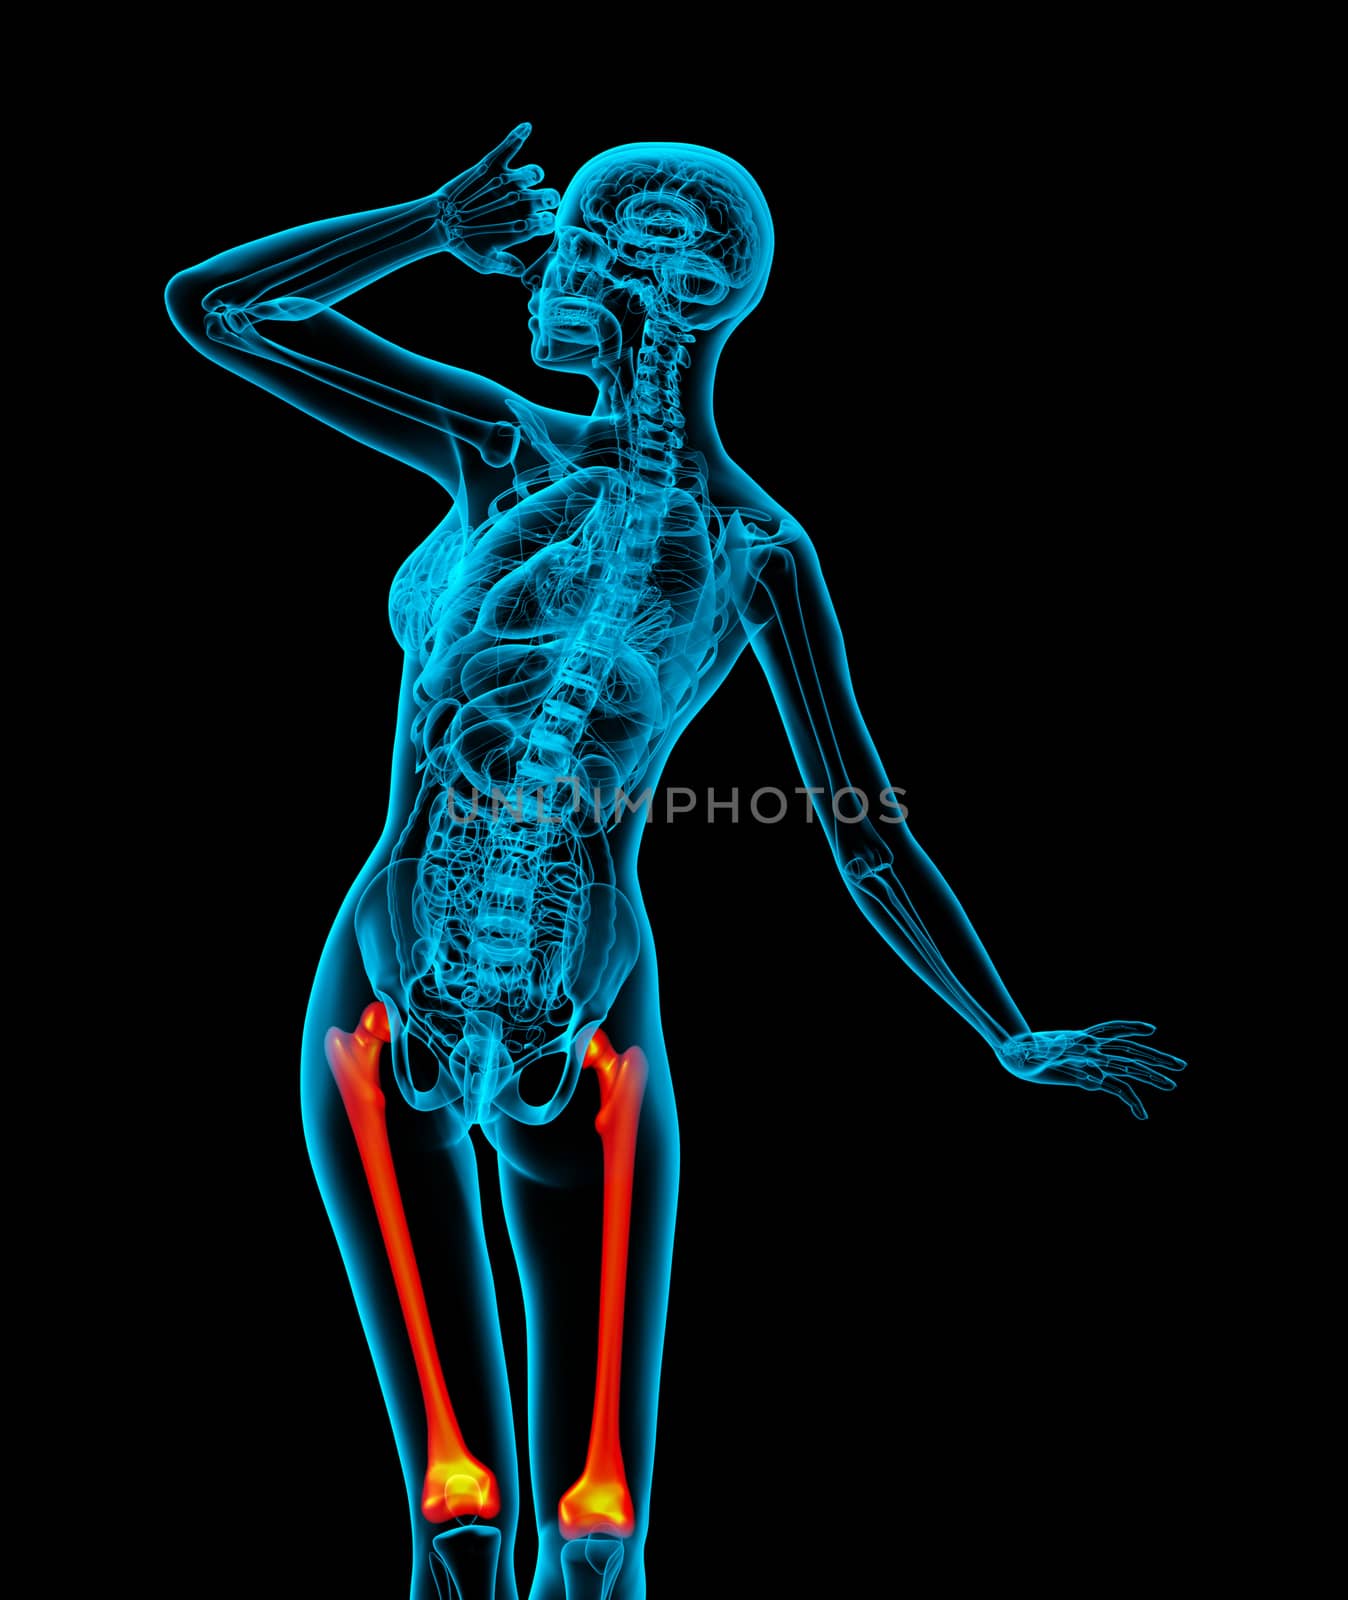 3d render medical illustration of the femur bone - back view